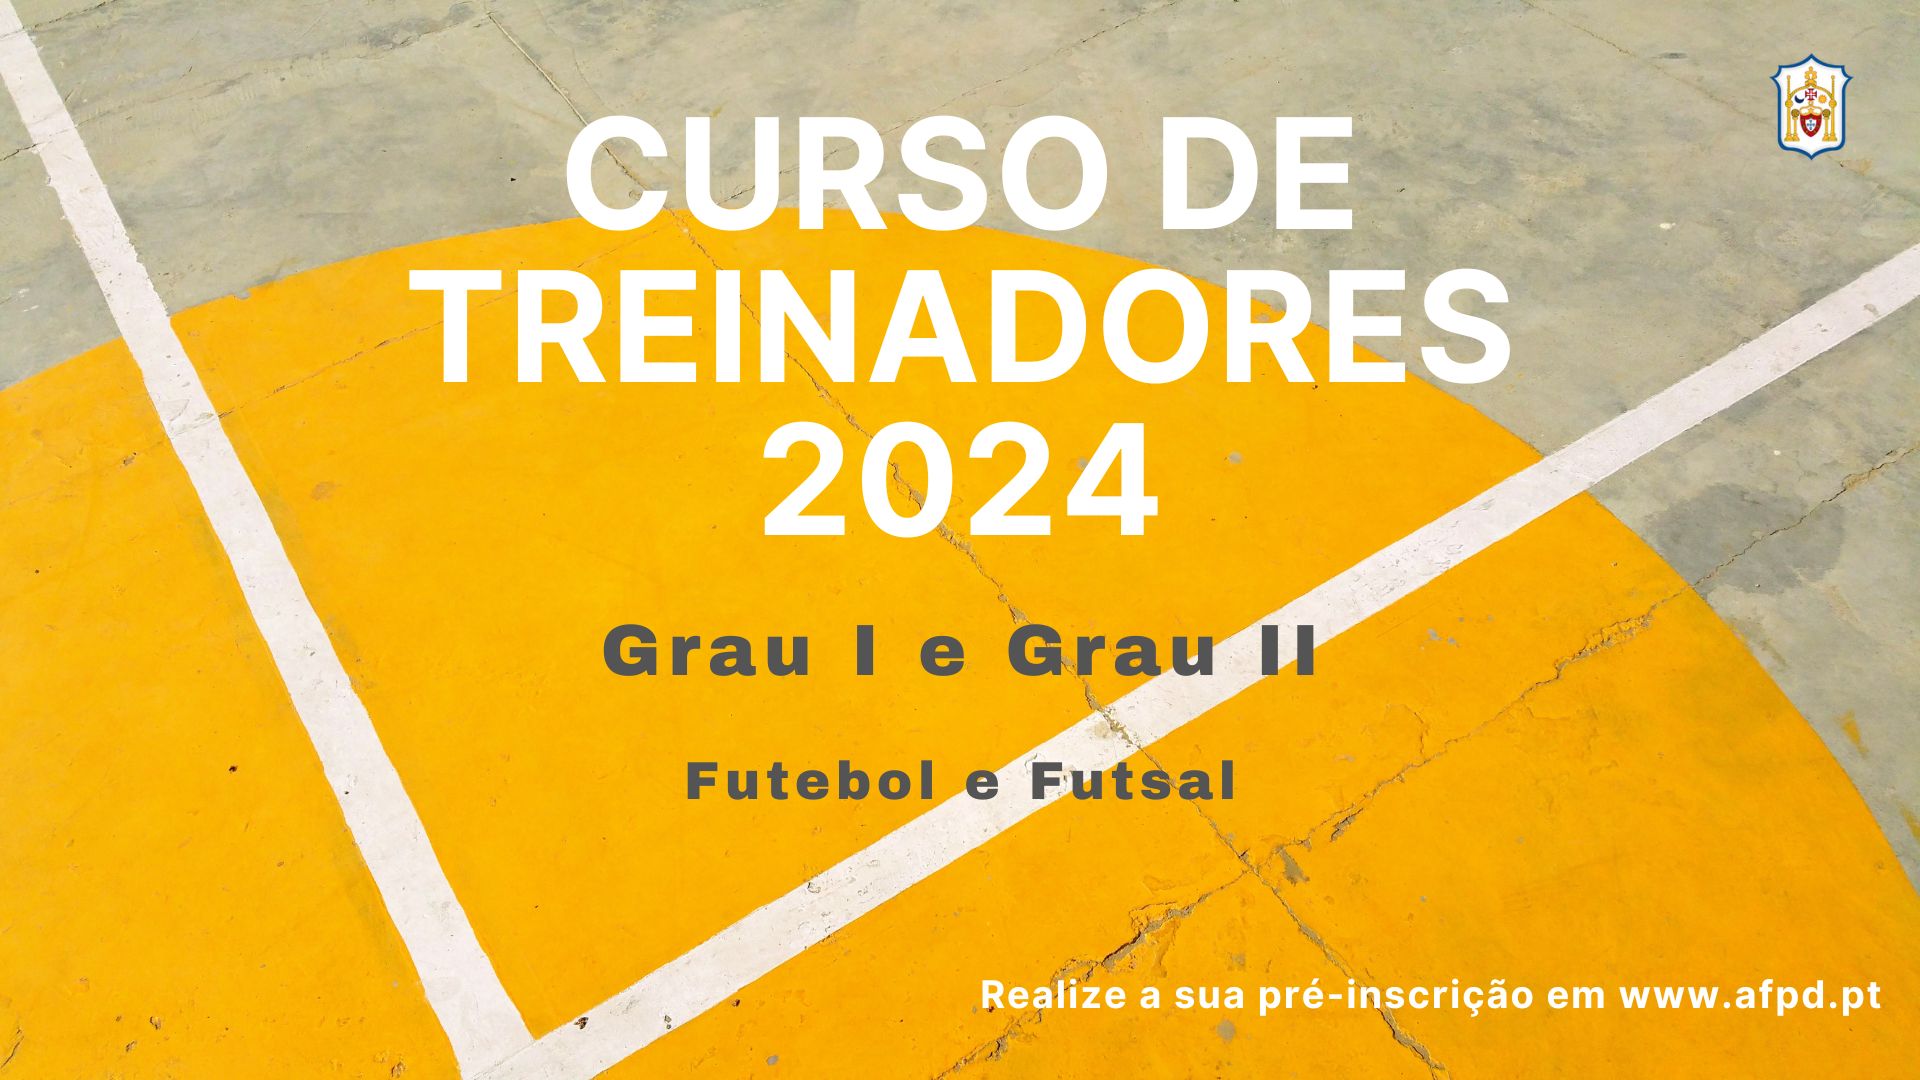 Curso de Treinadores 2023-2024 - Grau I e II - Futebol e Futsal